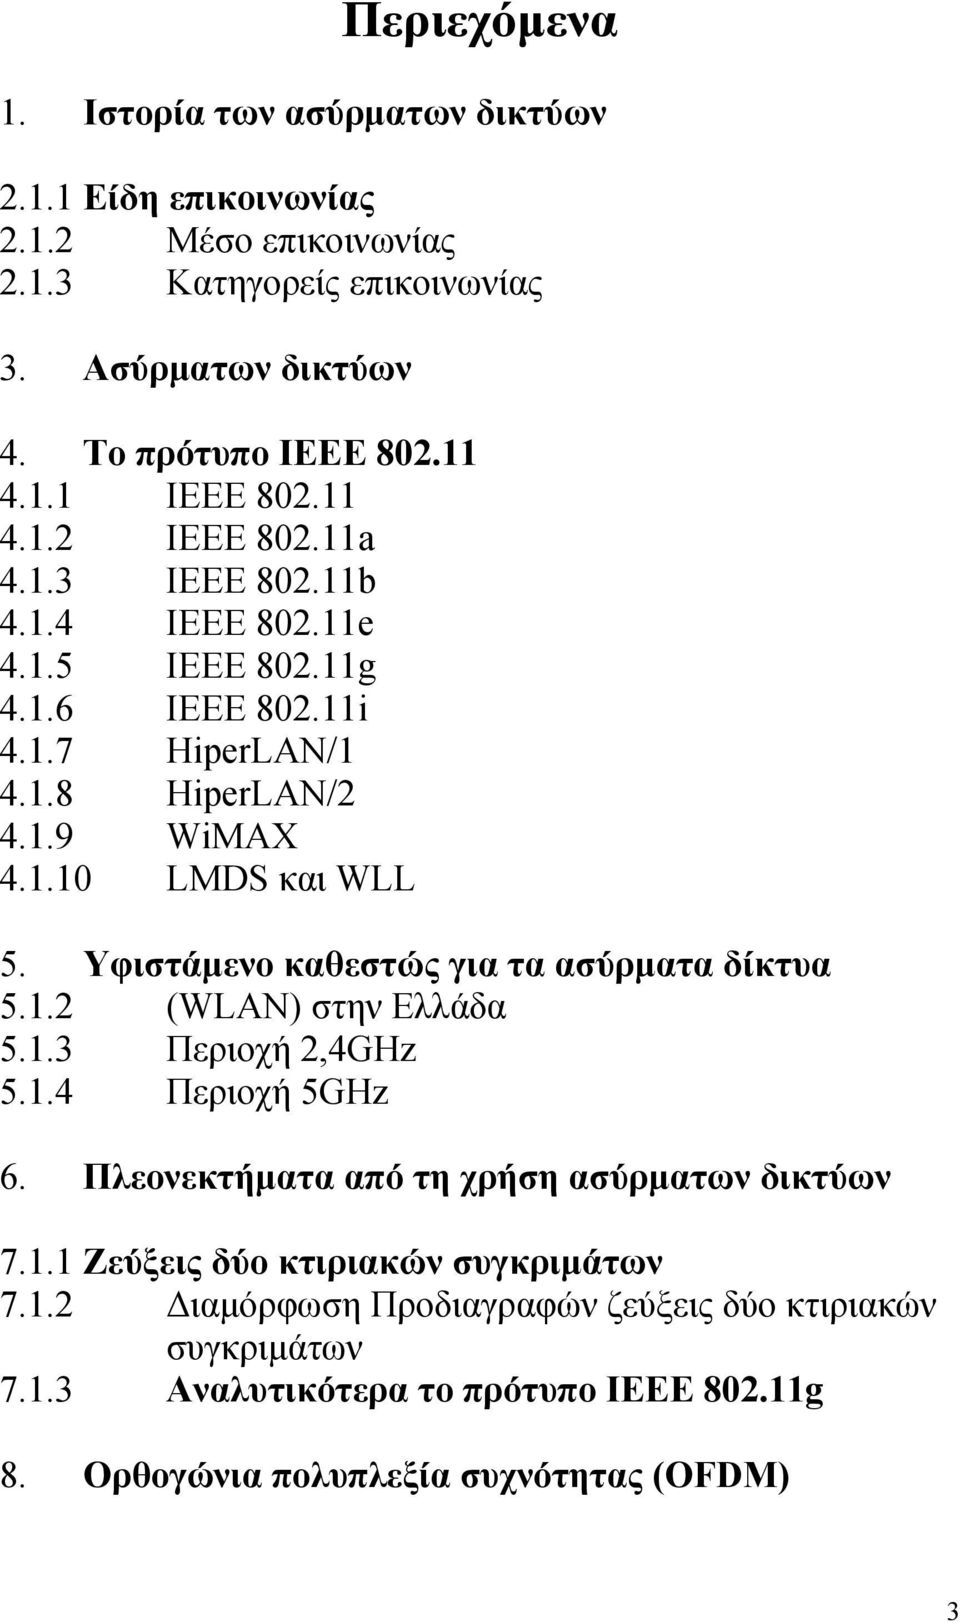 Υφιστάμενο καθεστώς για τα ασύρματα δίκτυα 5.1.2 (WLAN) στην Ελλάδα 5.1.3 Περιοχή 2,4GHz 5.1.4 Περιοχή 5GHz 6. Πλεονεκτήματα από τη χρήση ασύρματων δικτύων 7.1.1 Ζεύξεις δύο κτιριακών συγκριμάτων 7.